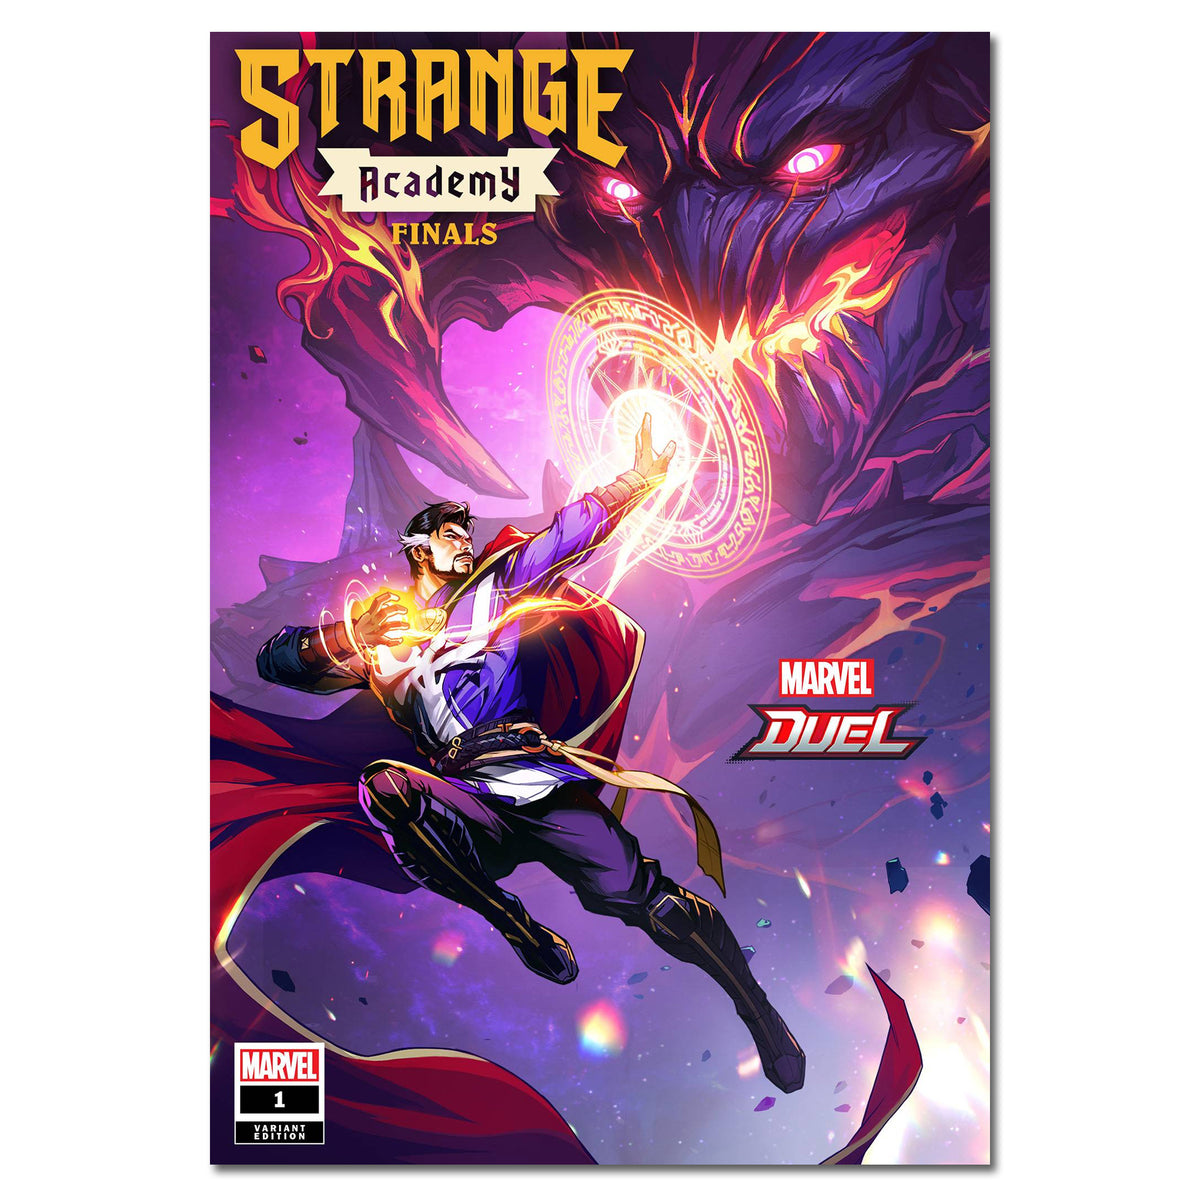 Strange Academy Finals #1 Cover Variant NETEASE FINALSALE